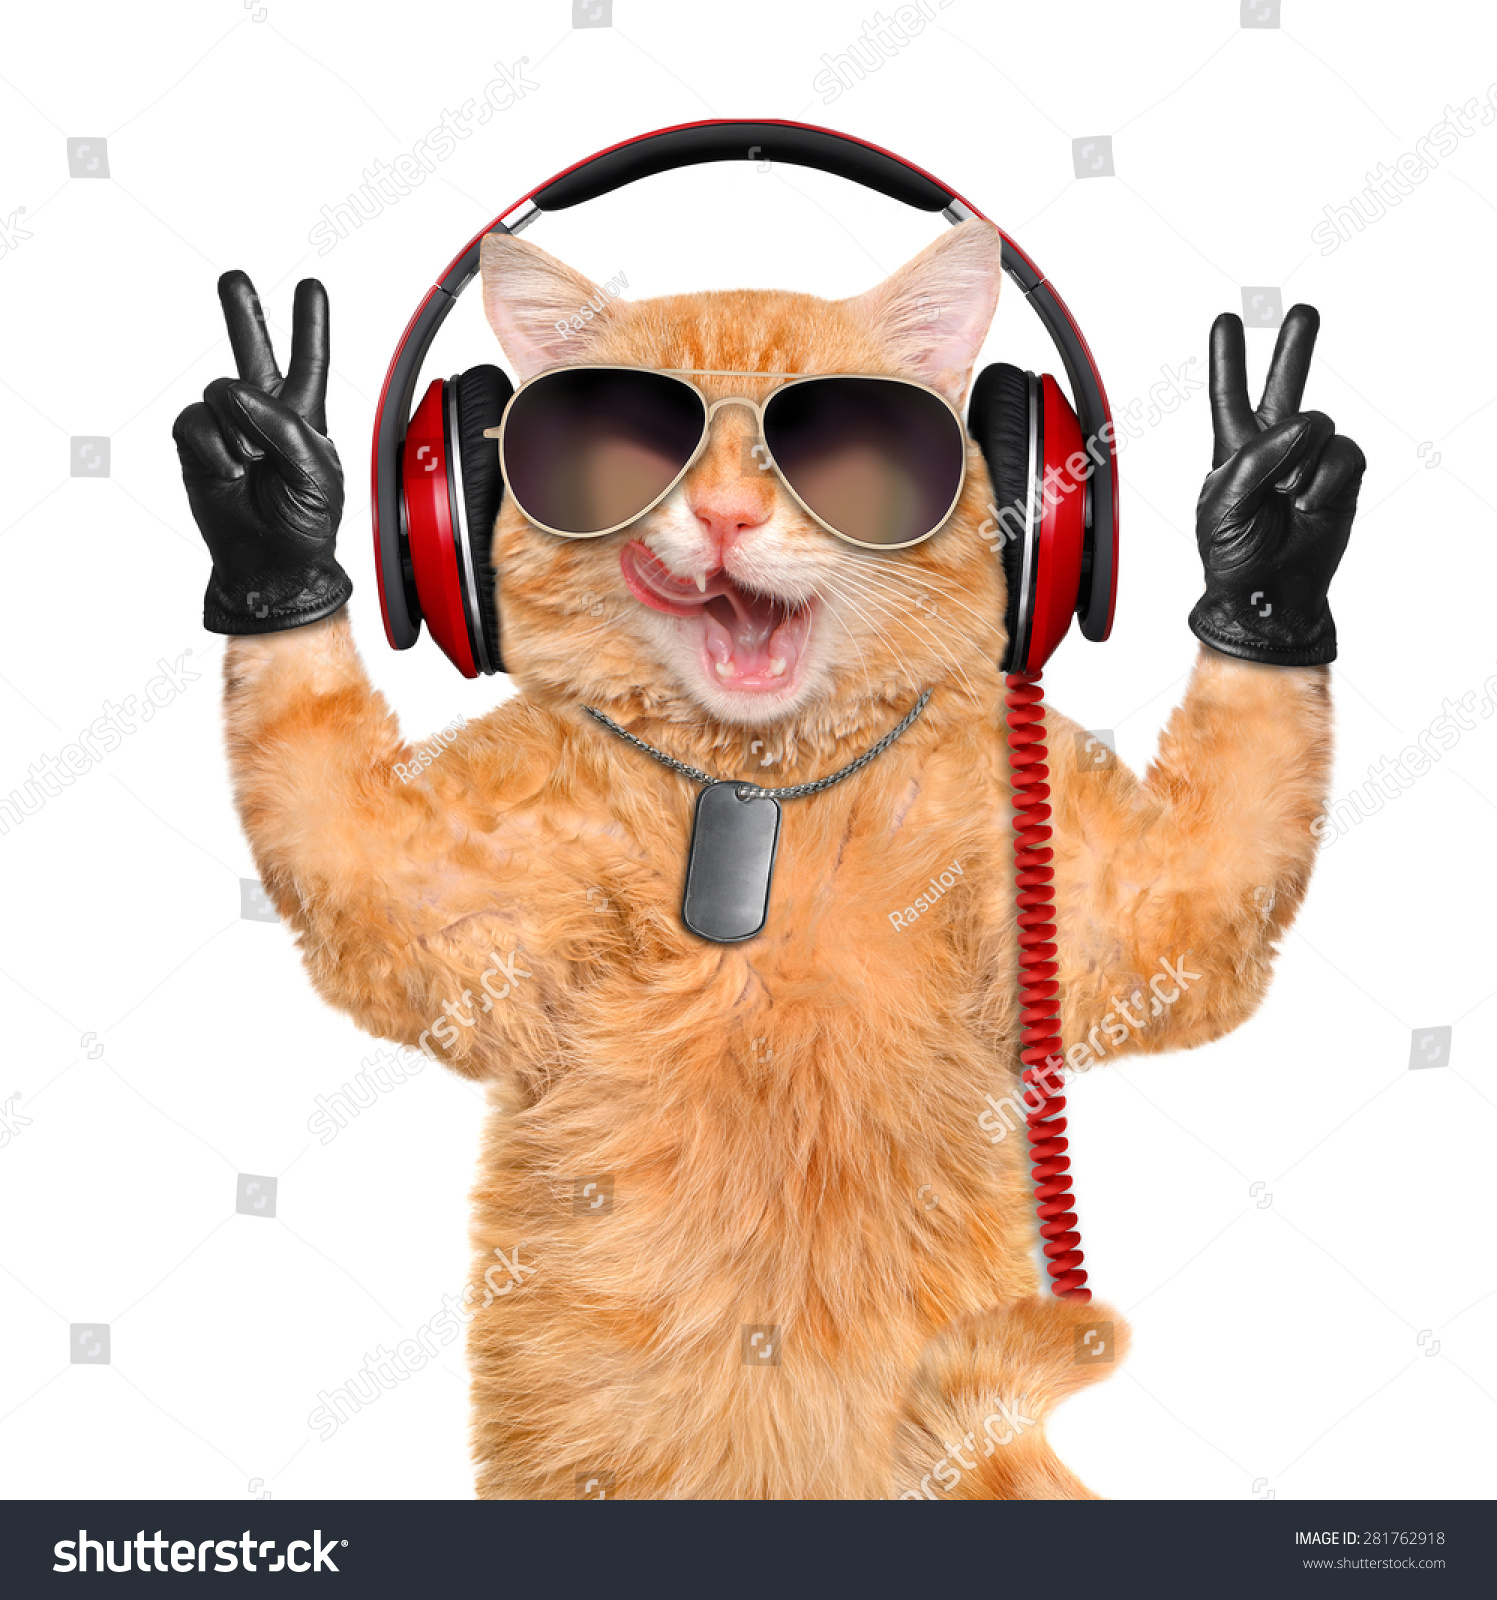 Cat Headphones. Stock Photo 281762918 : Shutterstock